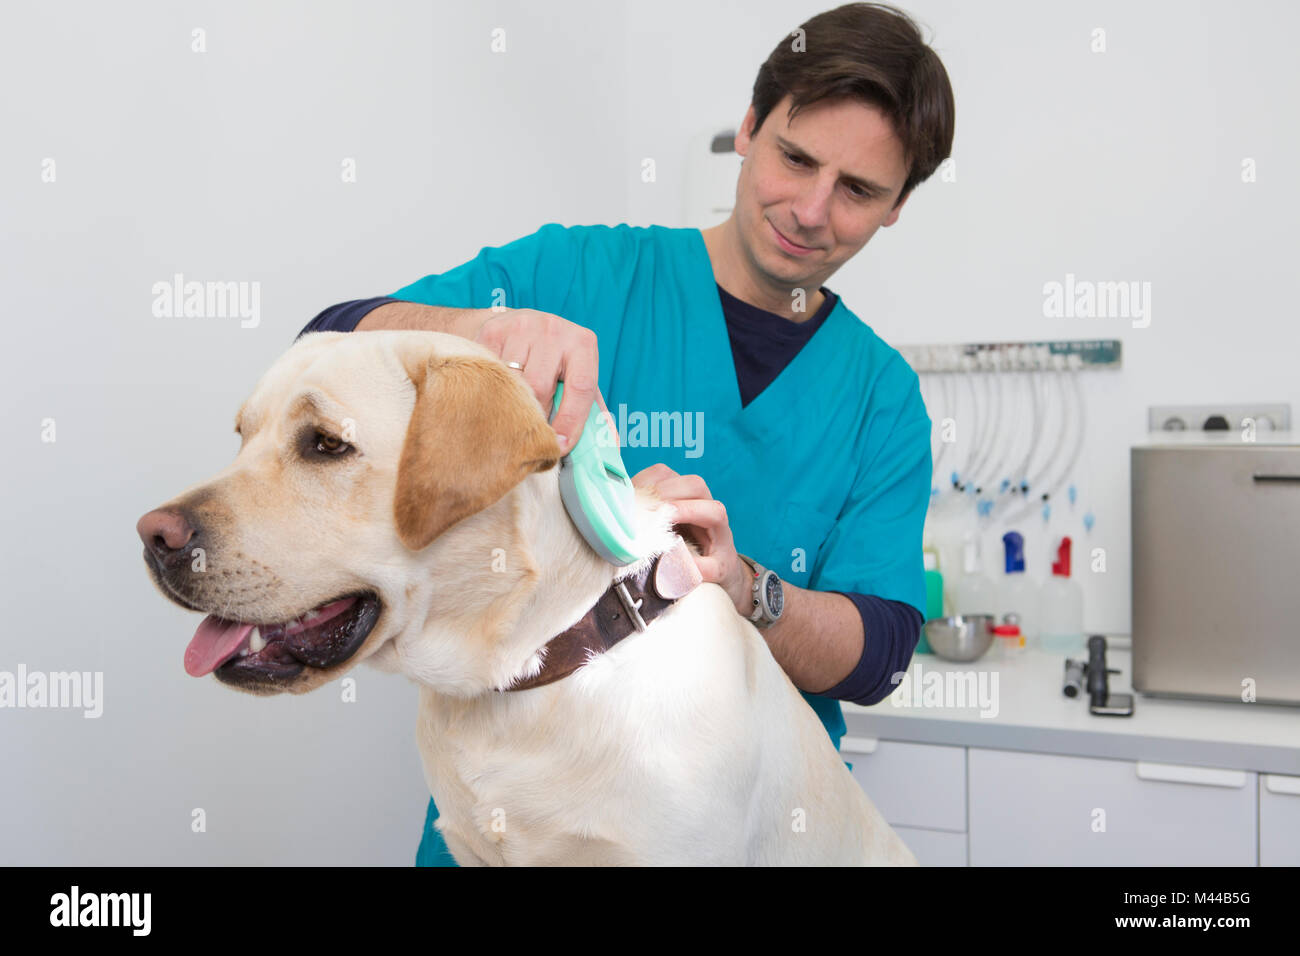 Tierärzte über Scanner auf Labrador Retriever Mikrochip zu lesen Stockfoto